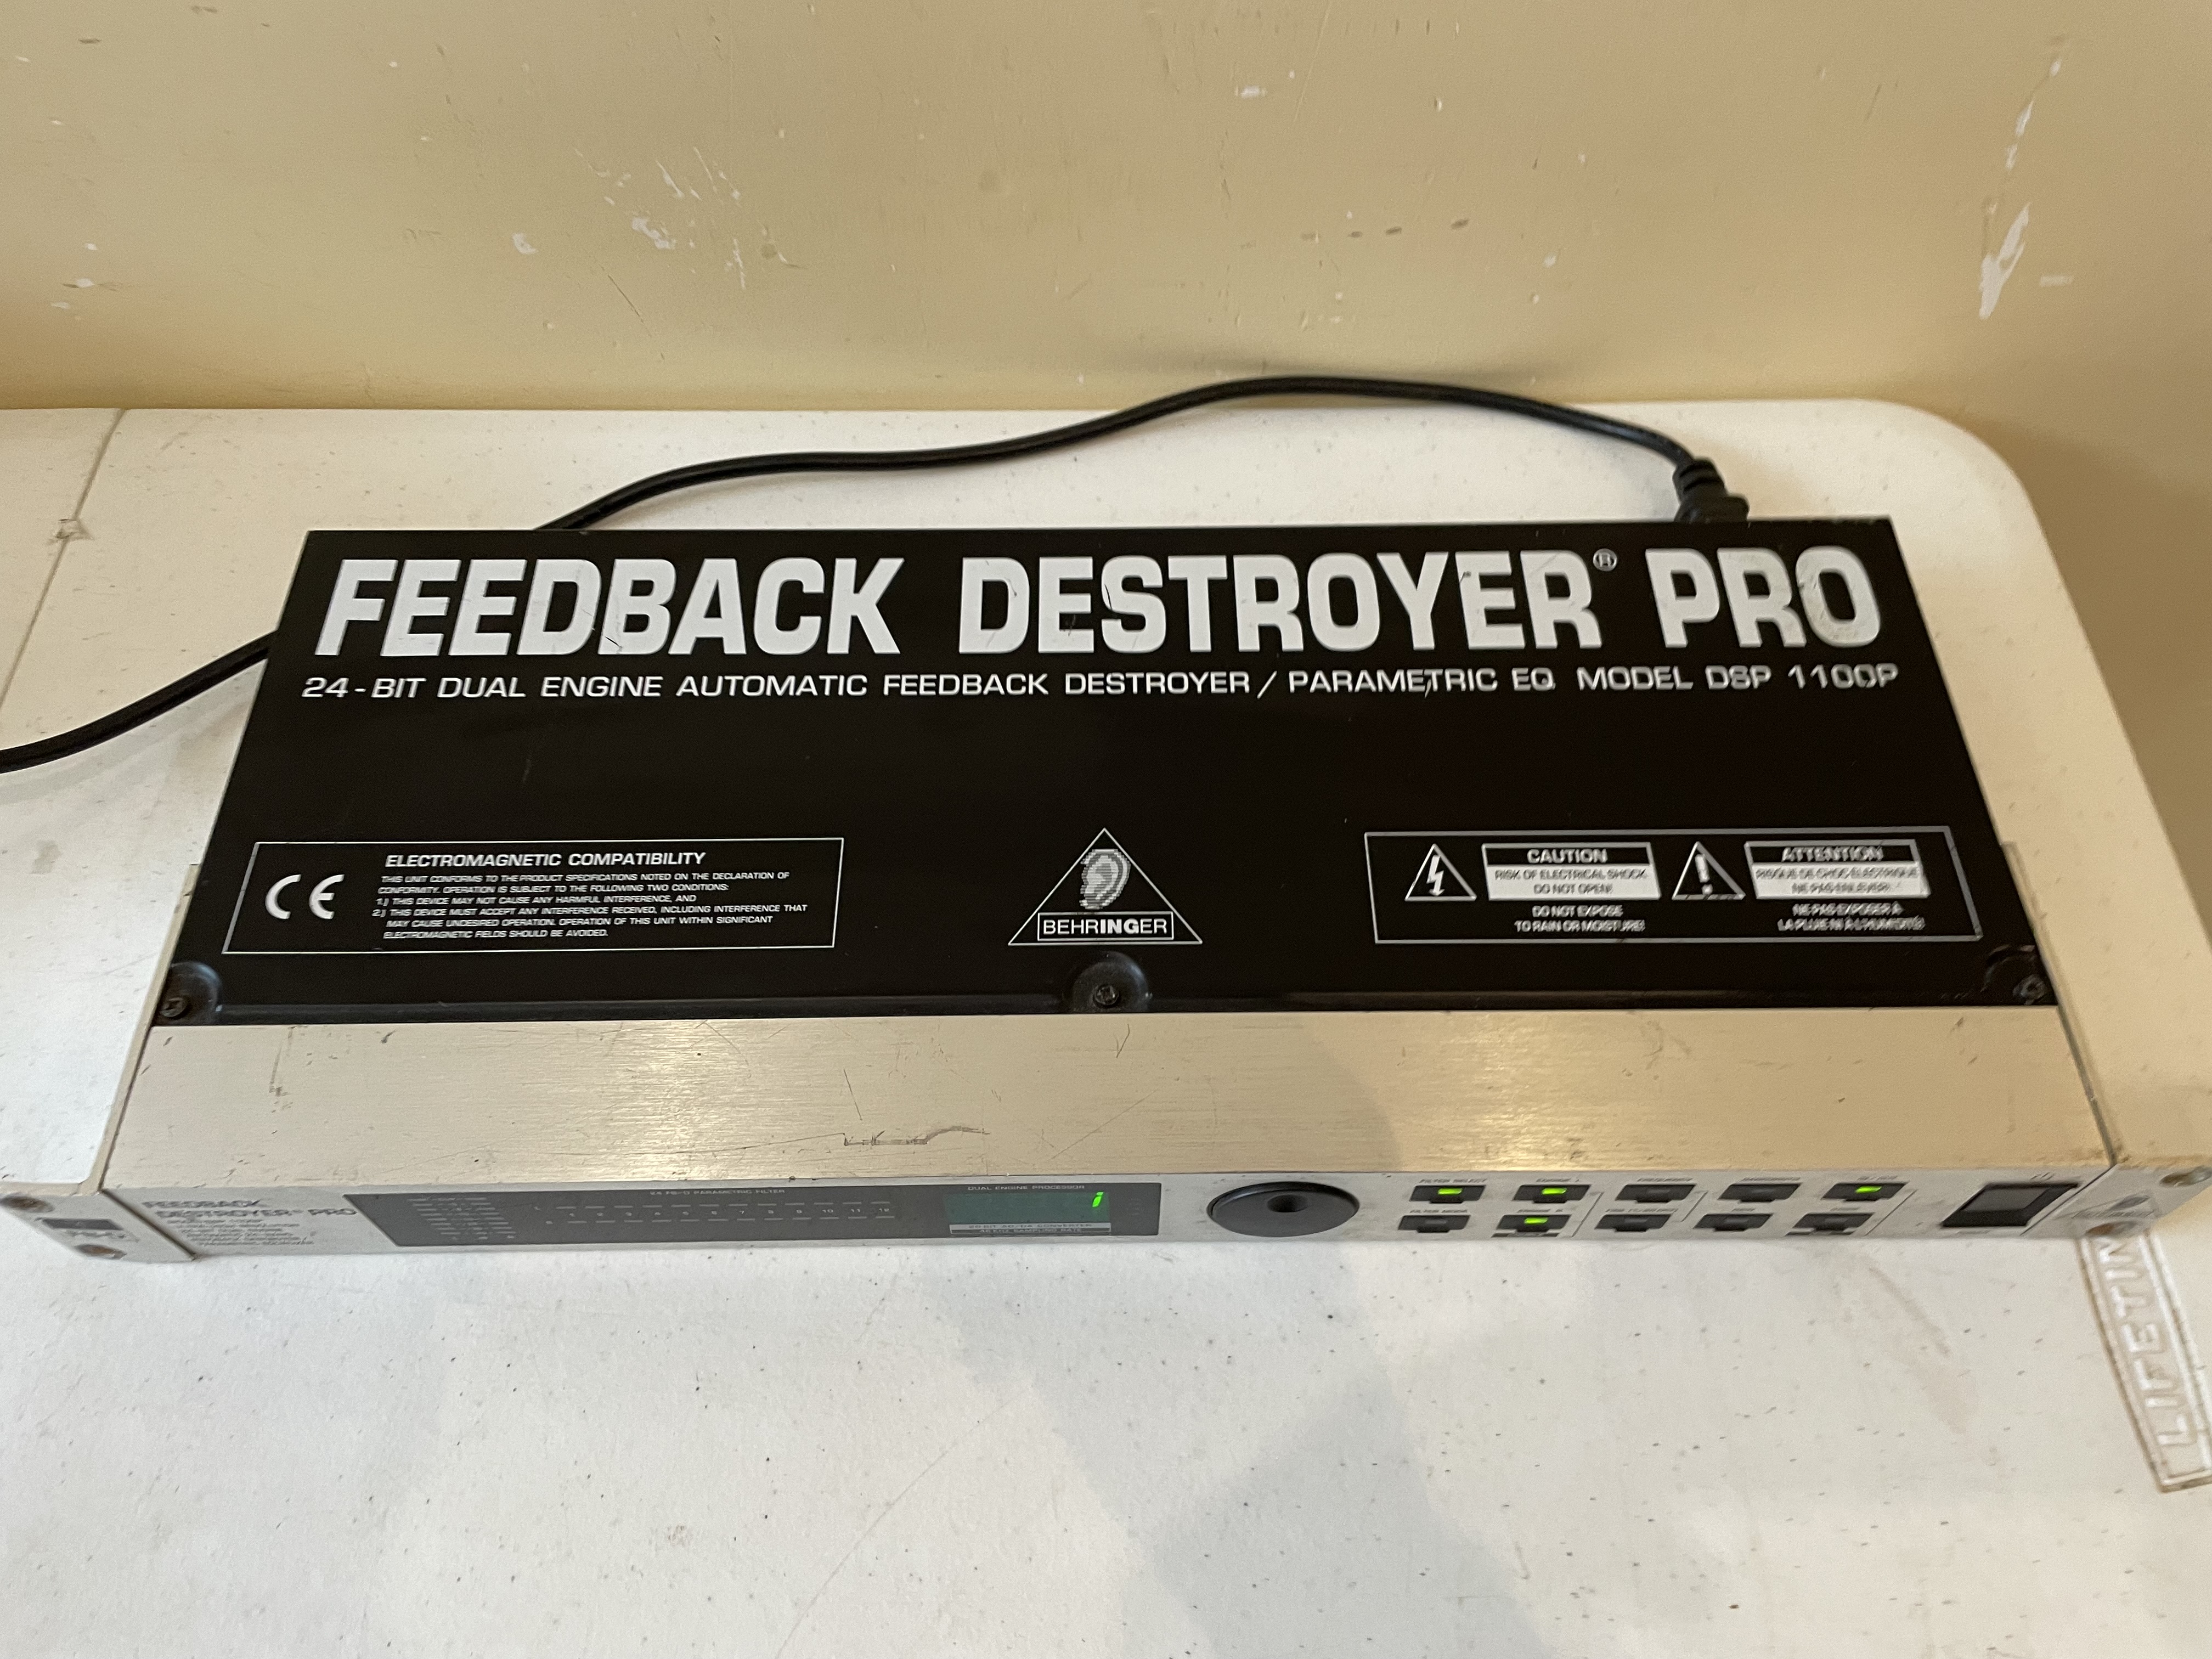 Feedback Destroyer Pro DSP1100P Behringer - Audiofanzine